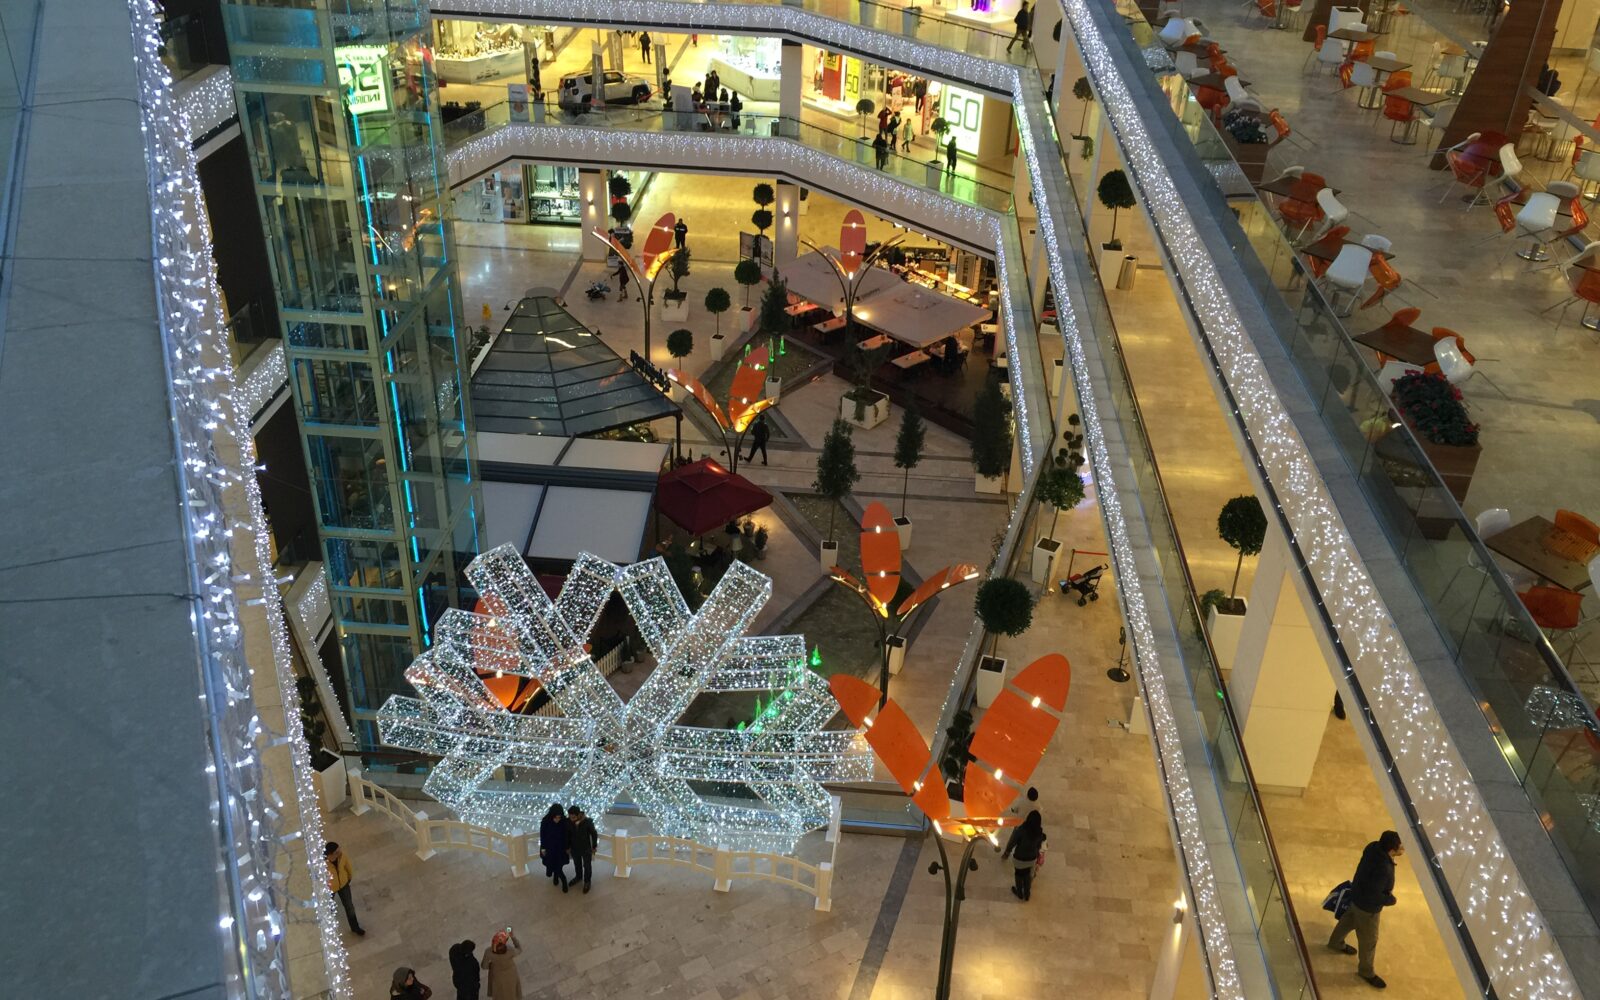 Suryapı Metrogarden